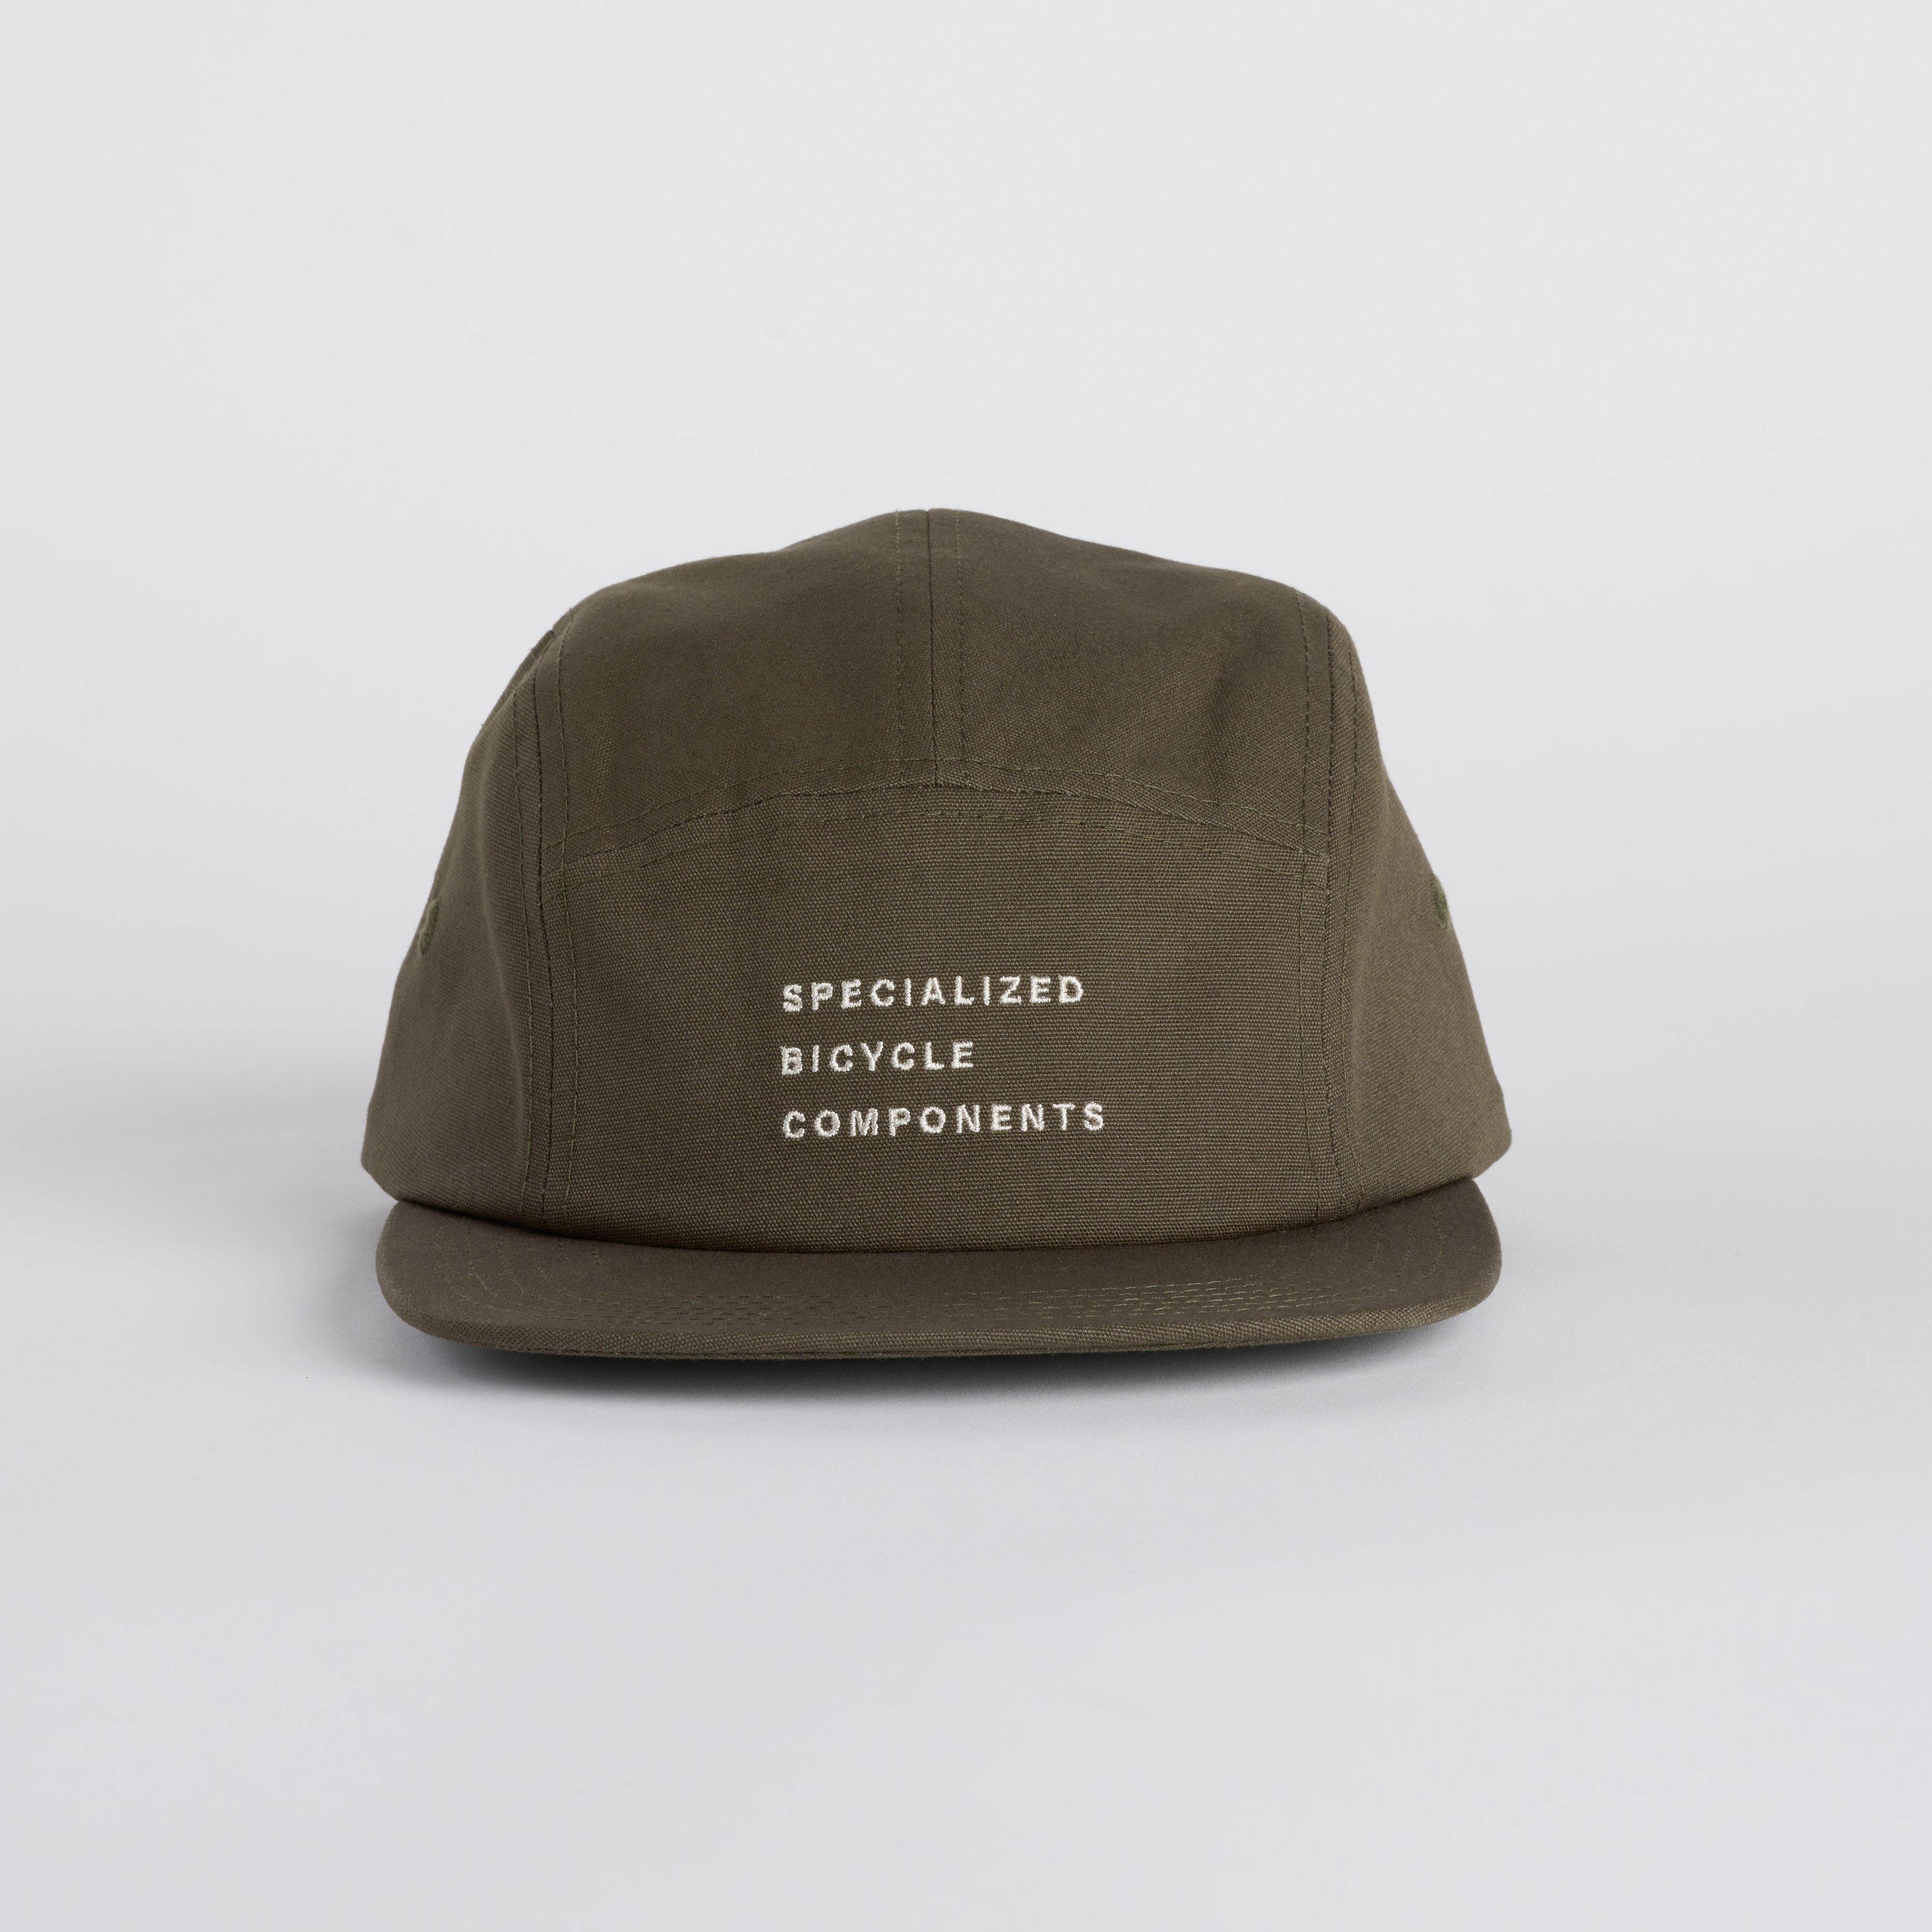 Pięciopanelowa czapka SBC Camper